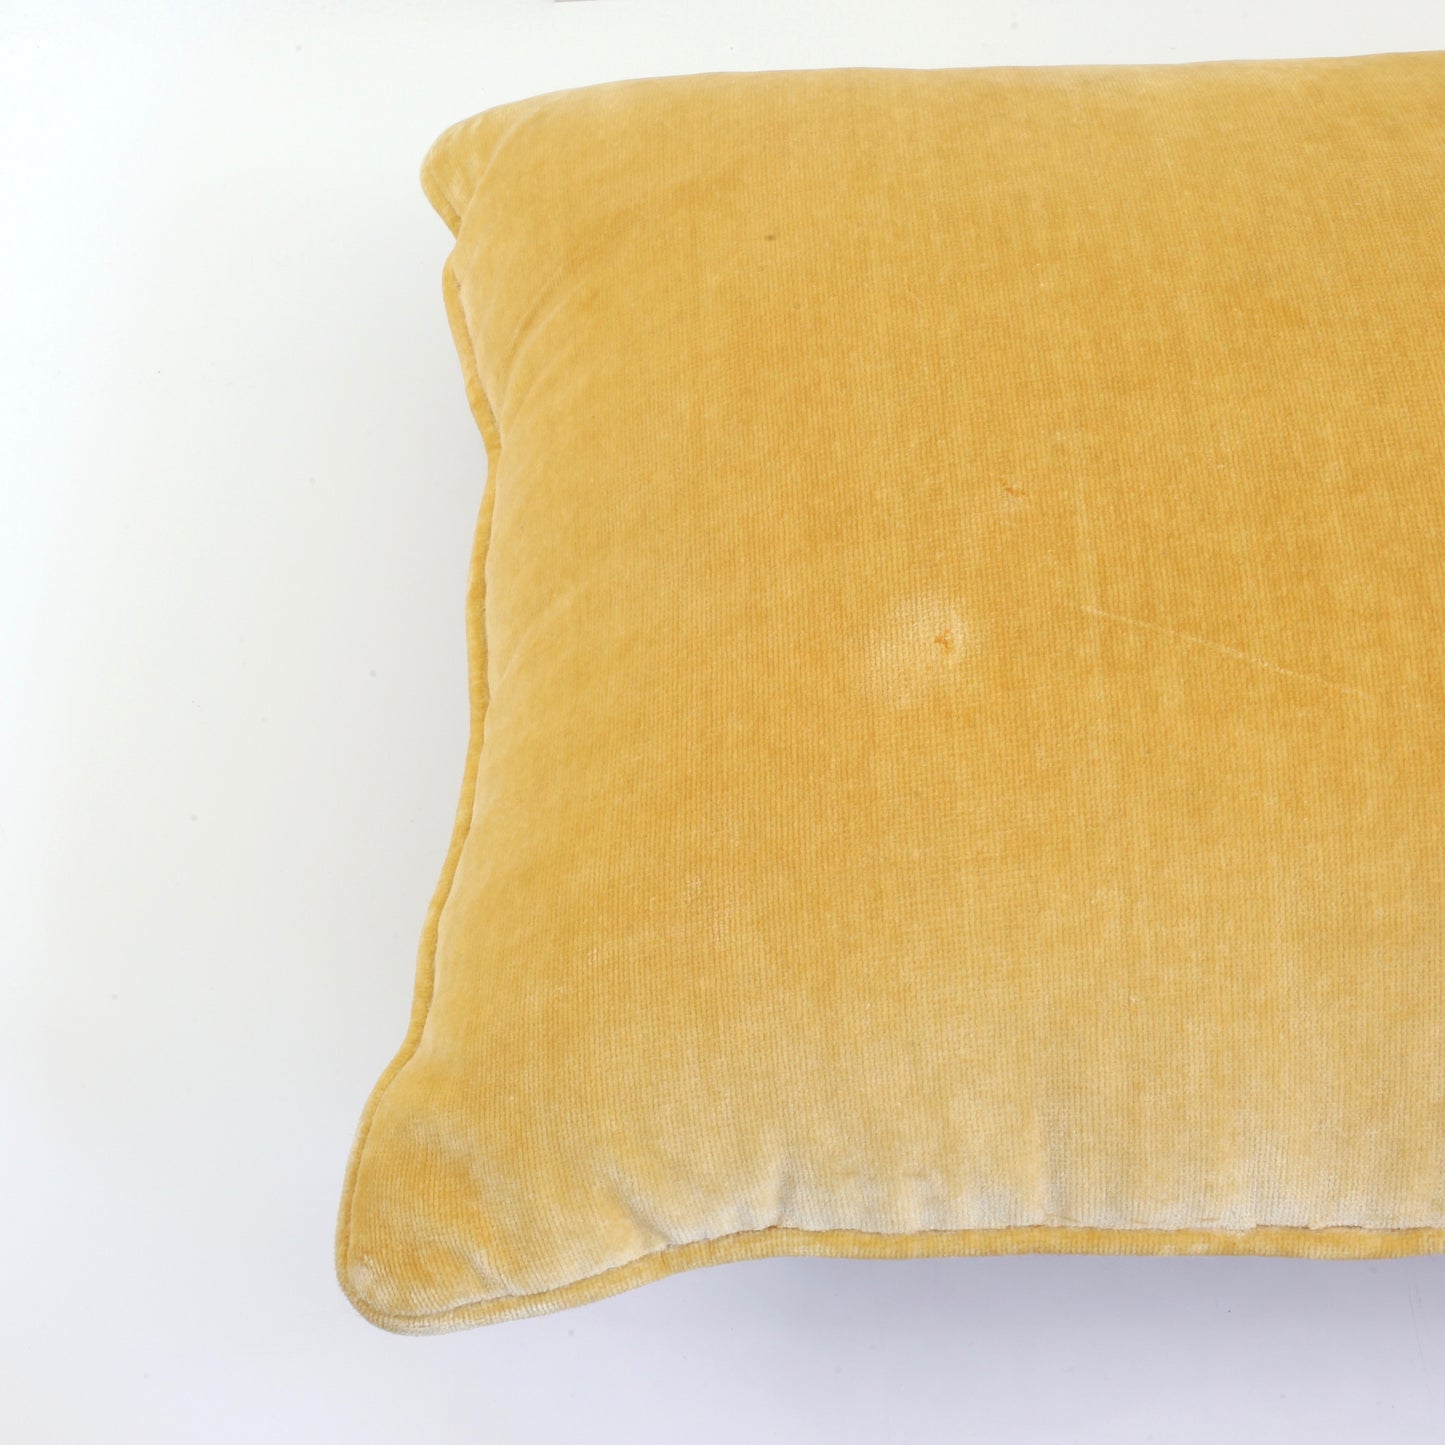 SOLD - Vintage Bargello Needlepoint Pillow